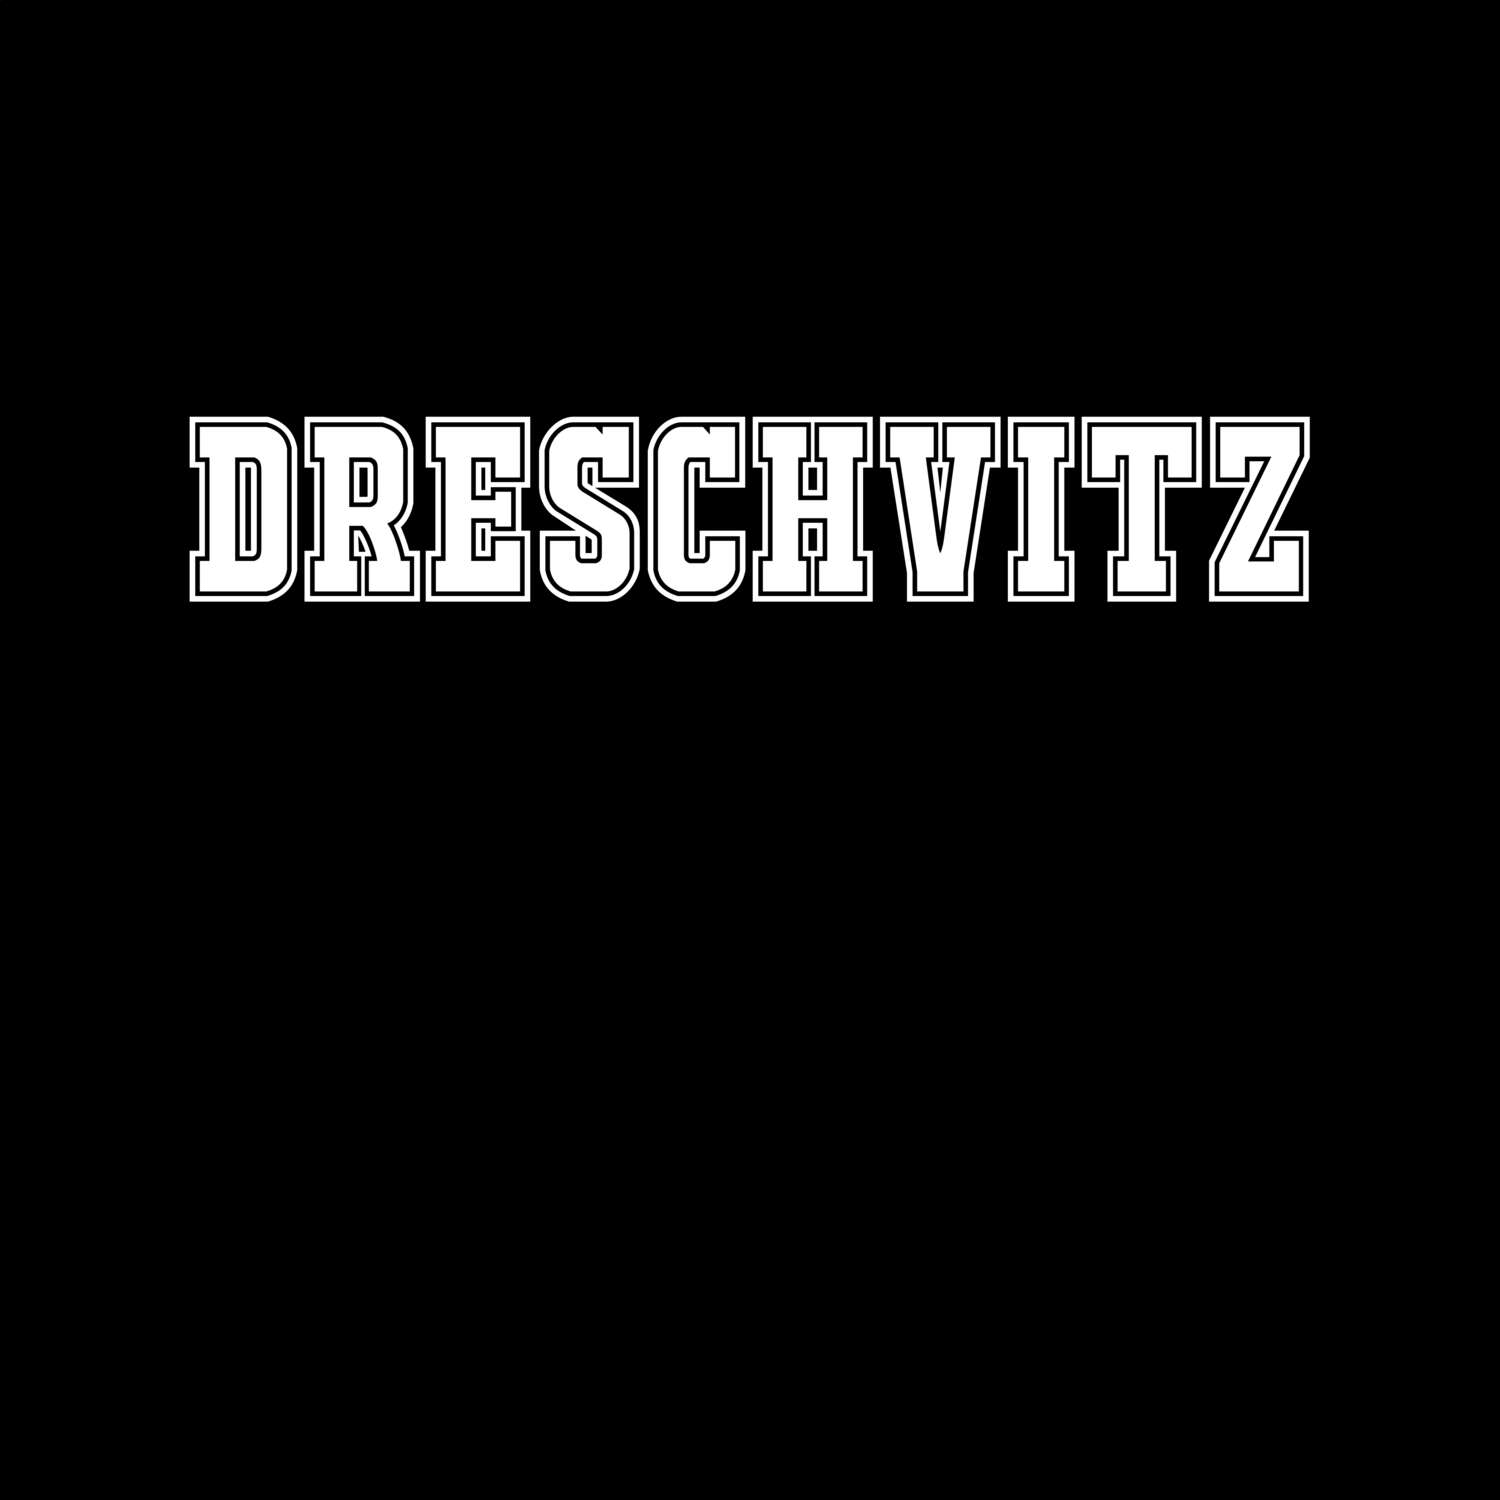 Dreschvitz T-Shirt »Classic«